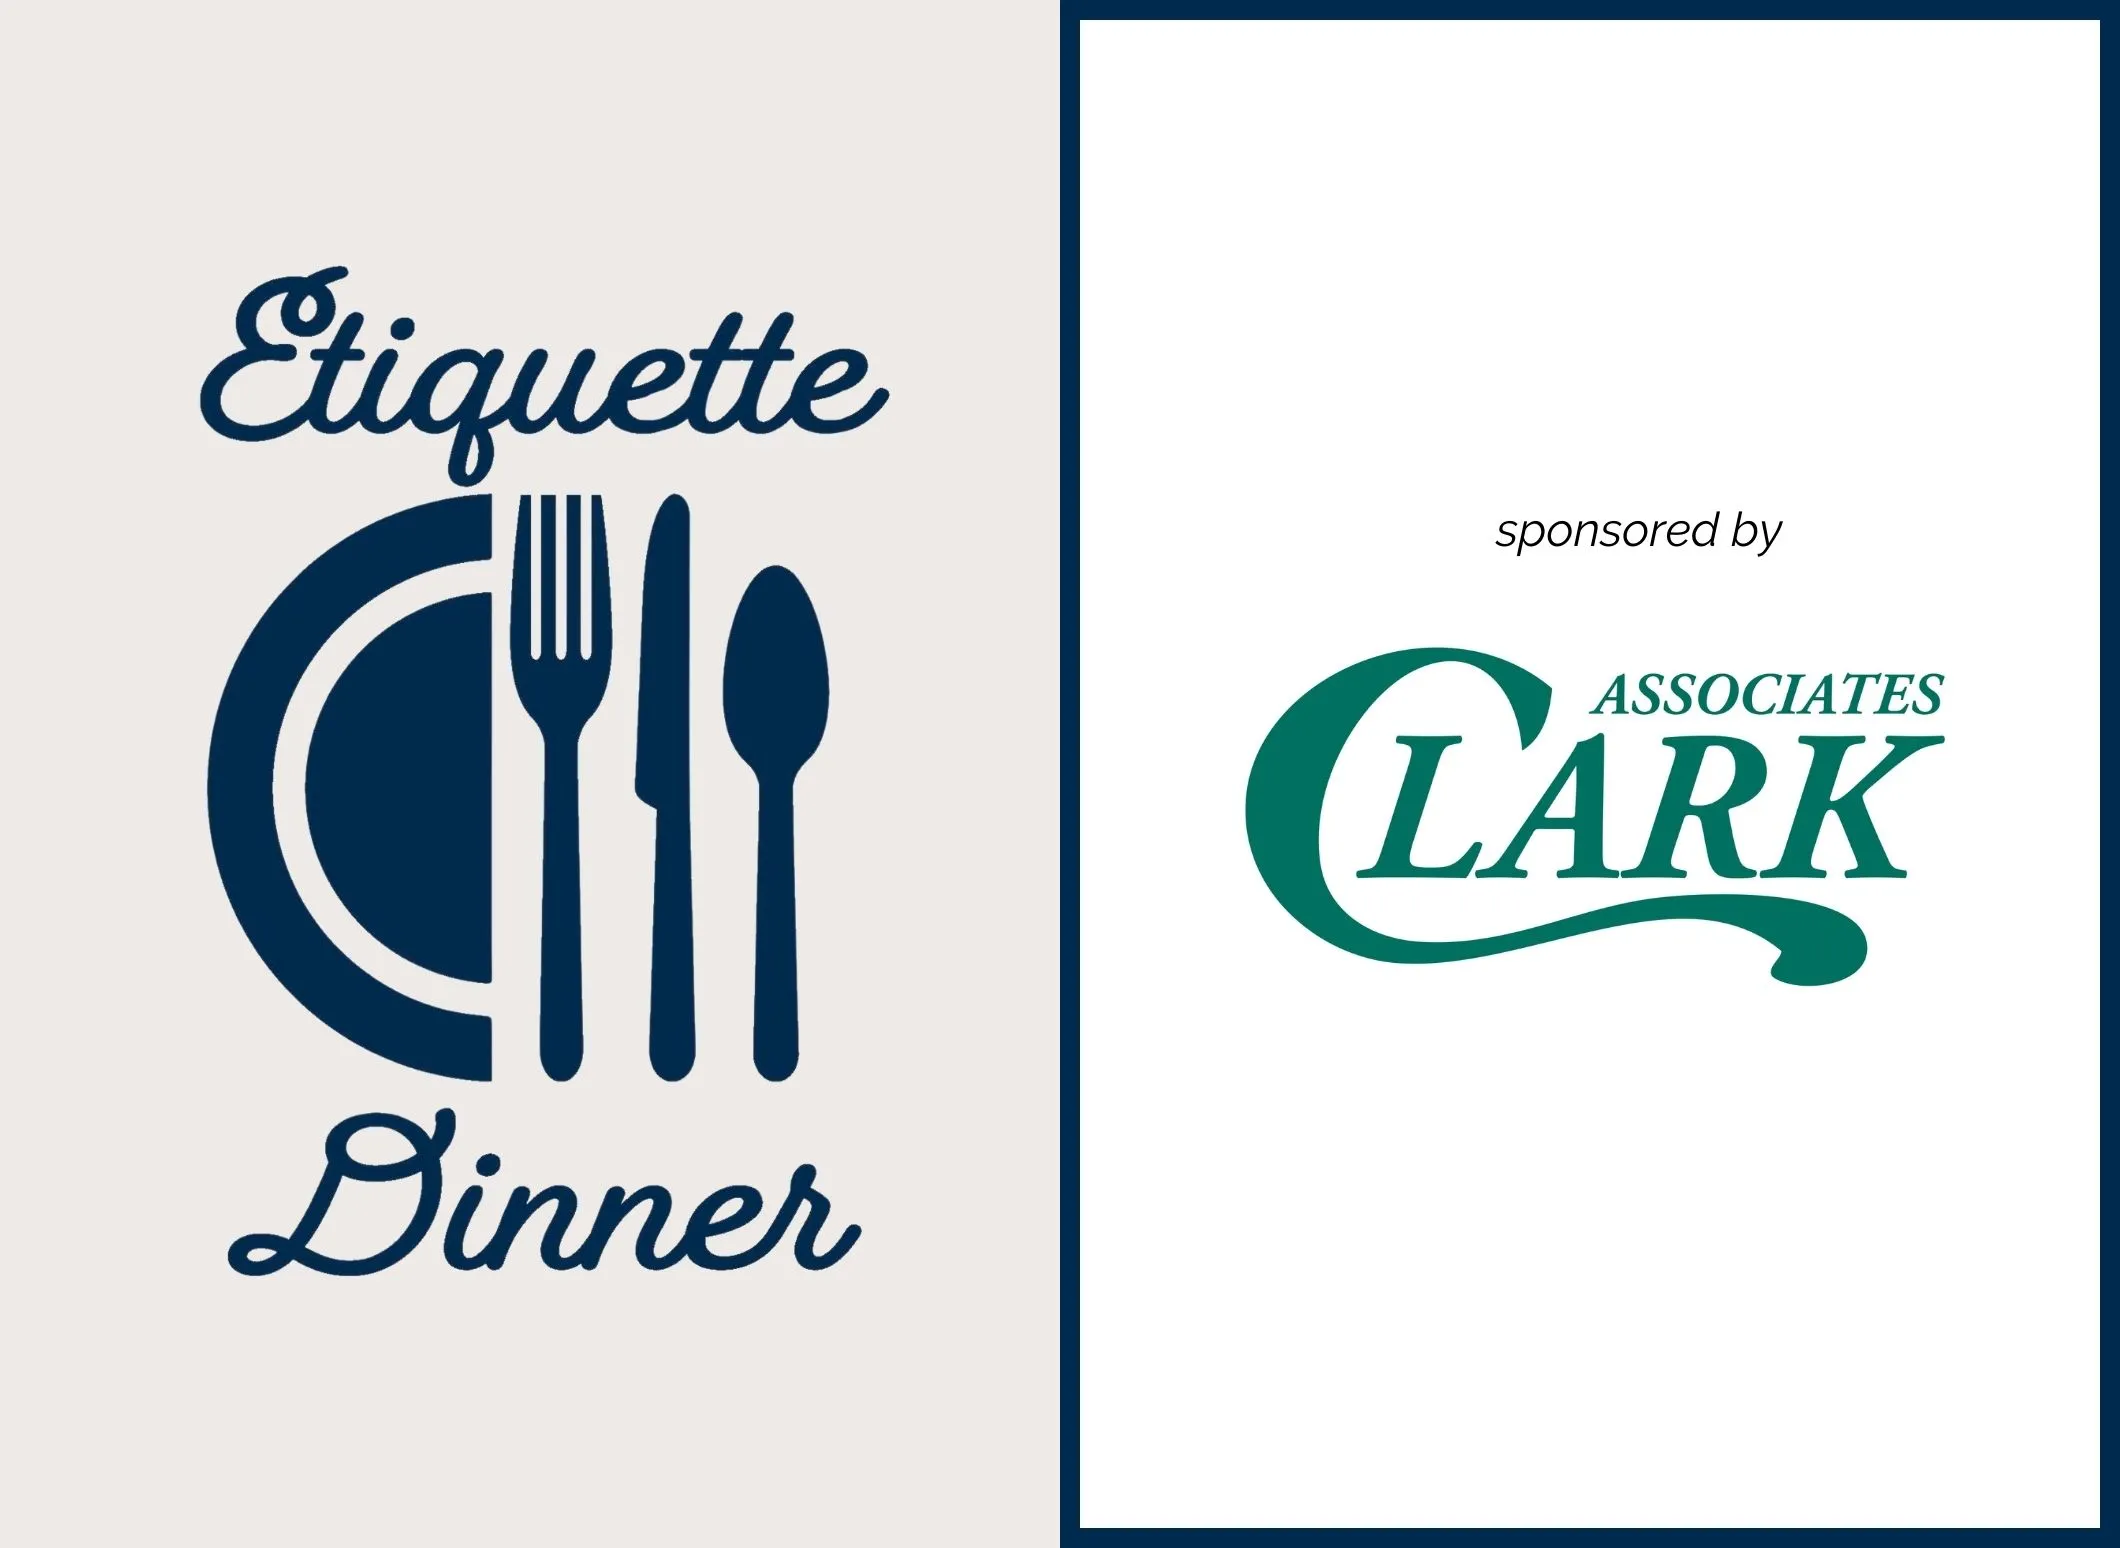 Etiquette Dinner sponsored by Clark Associates